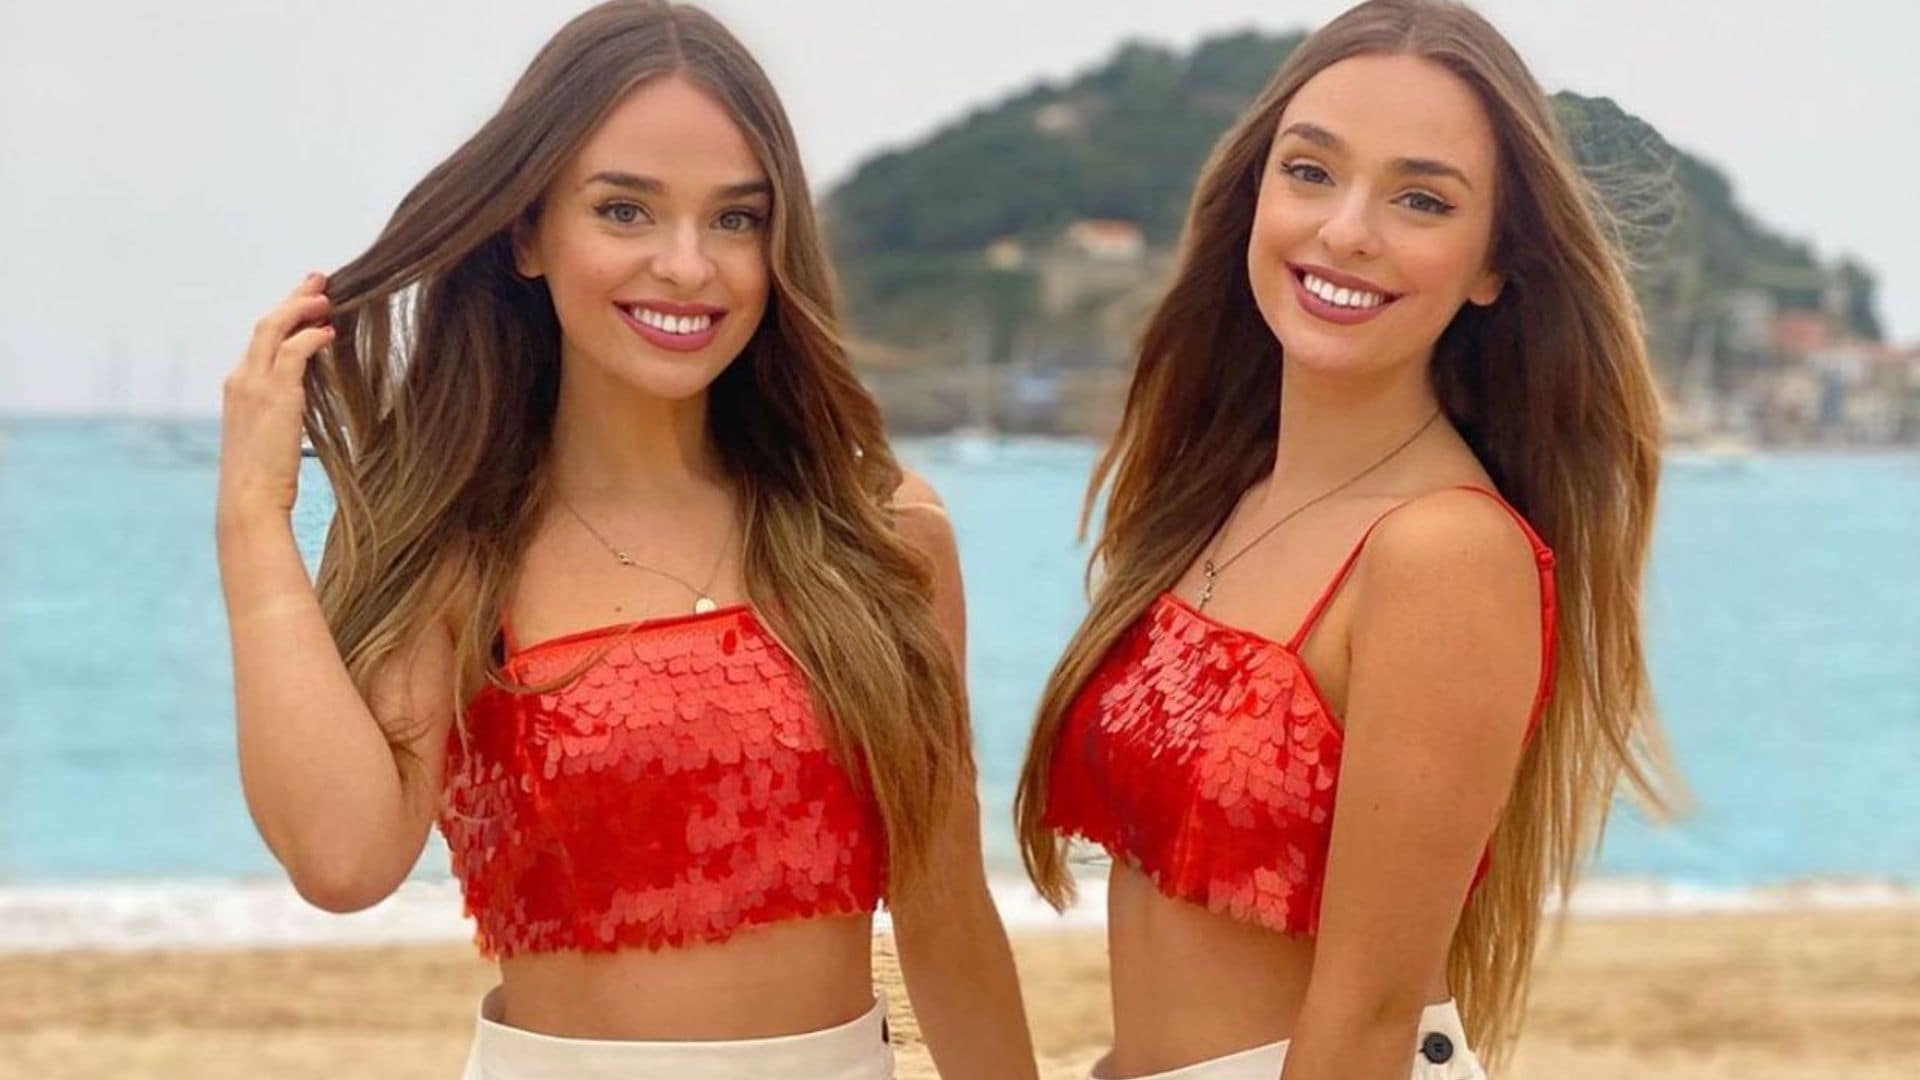 Políglotas, creyentes y muy 'healthy': así son las gemelas 'Twin Melody', que arrasan en la red